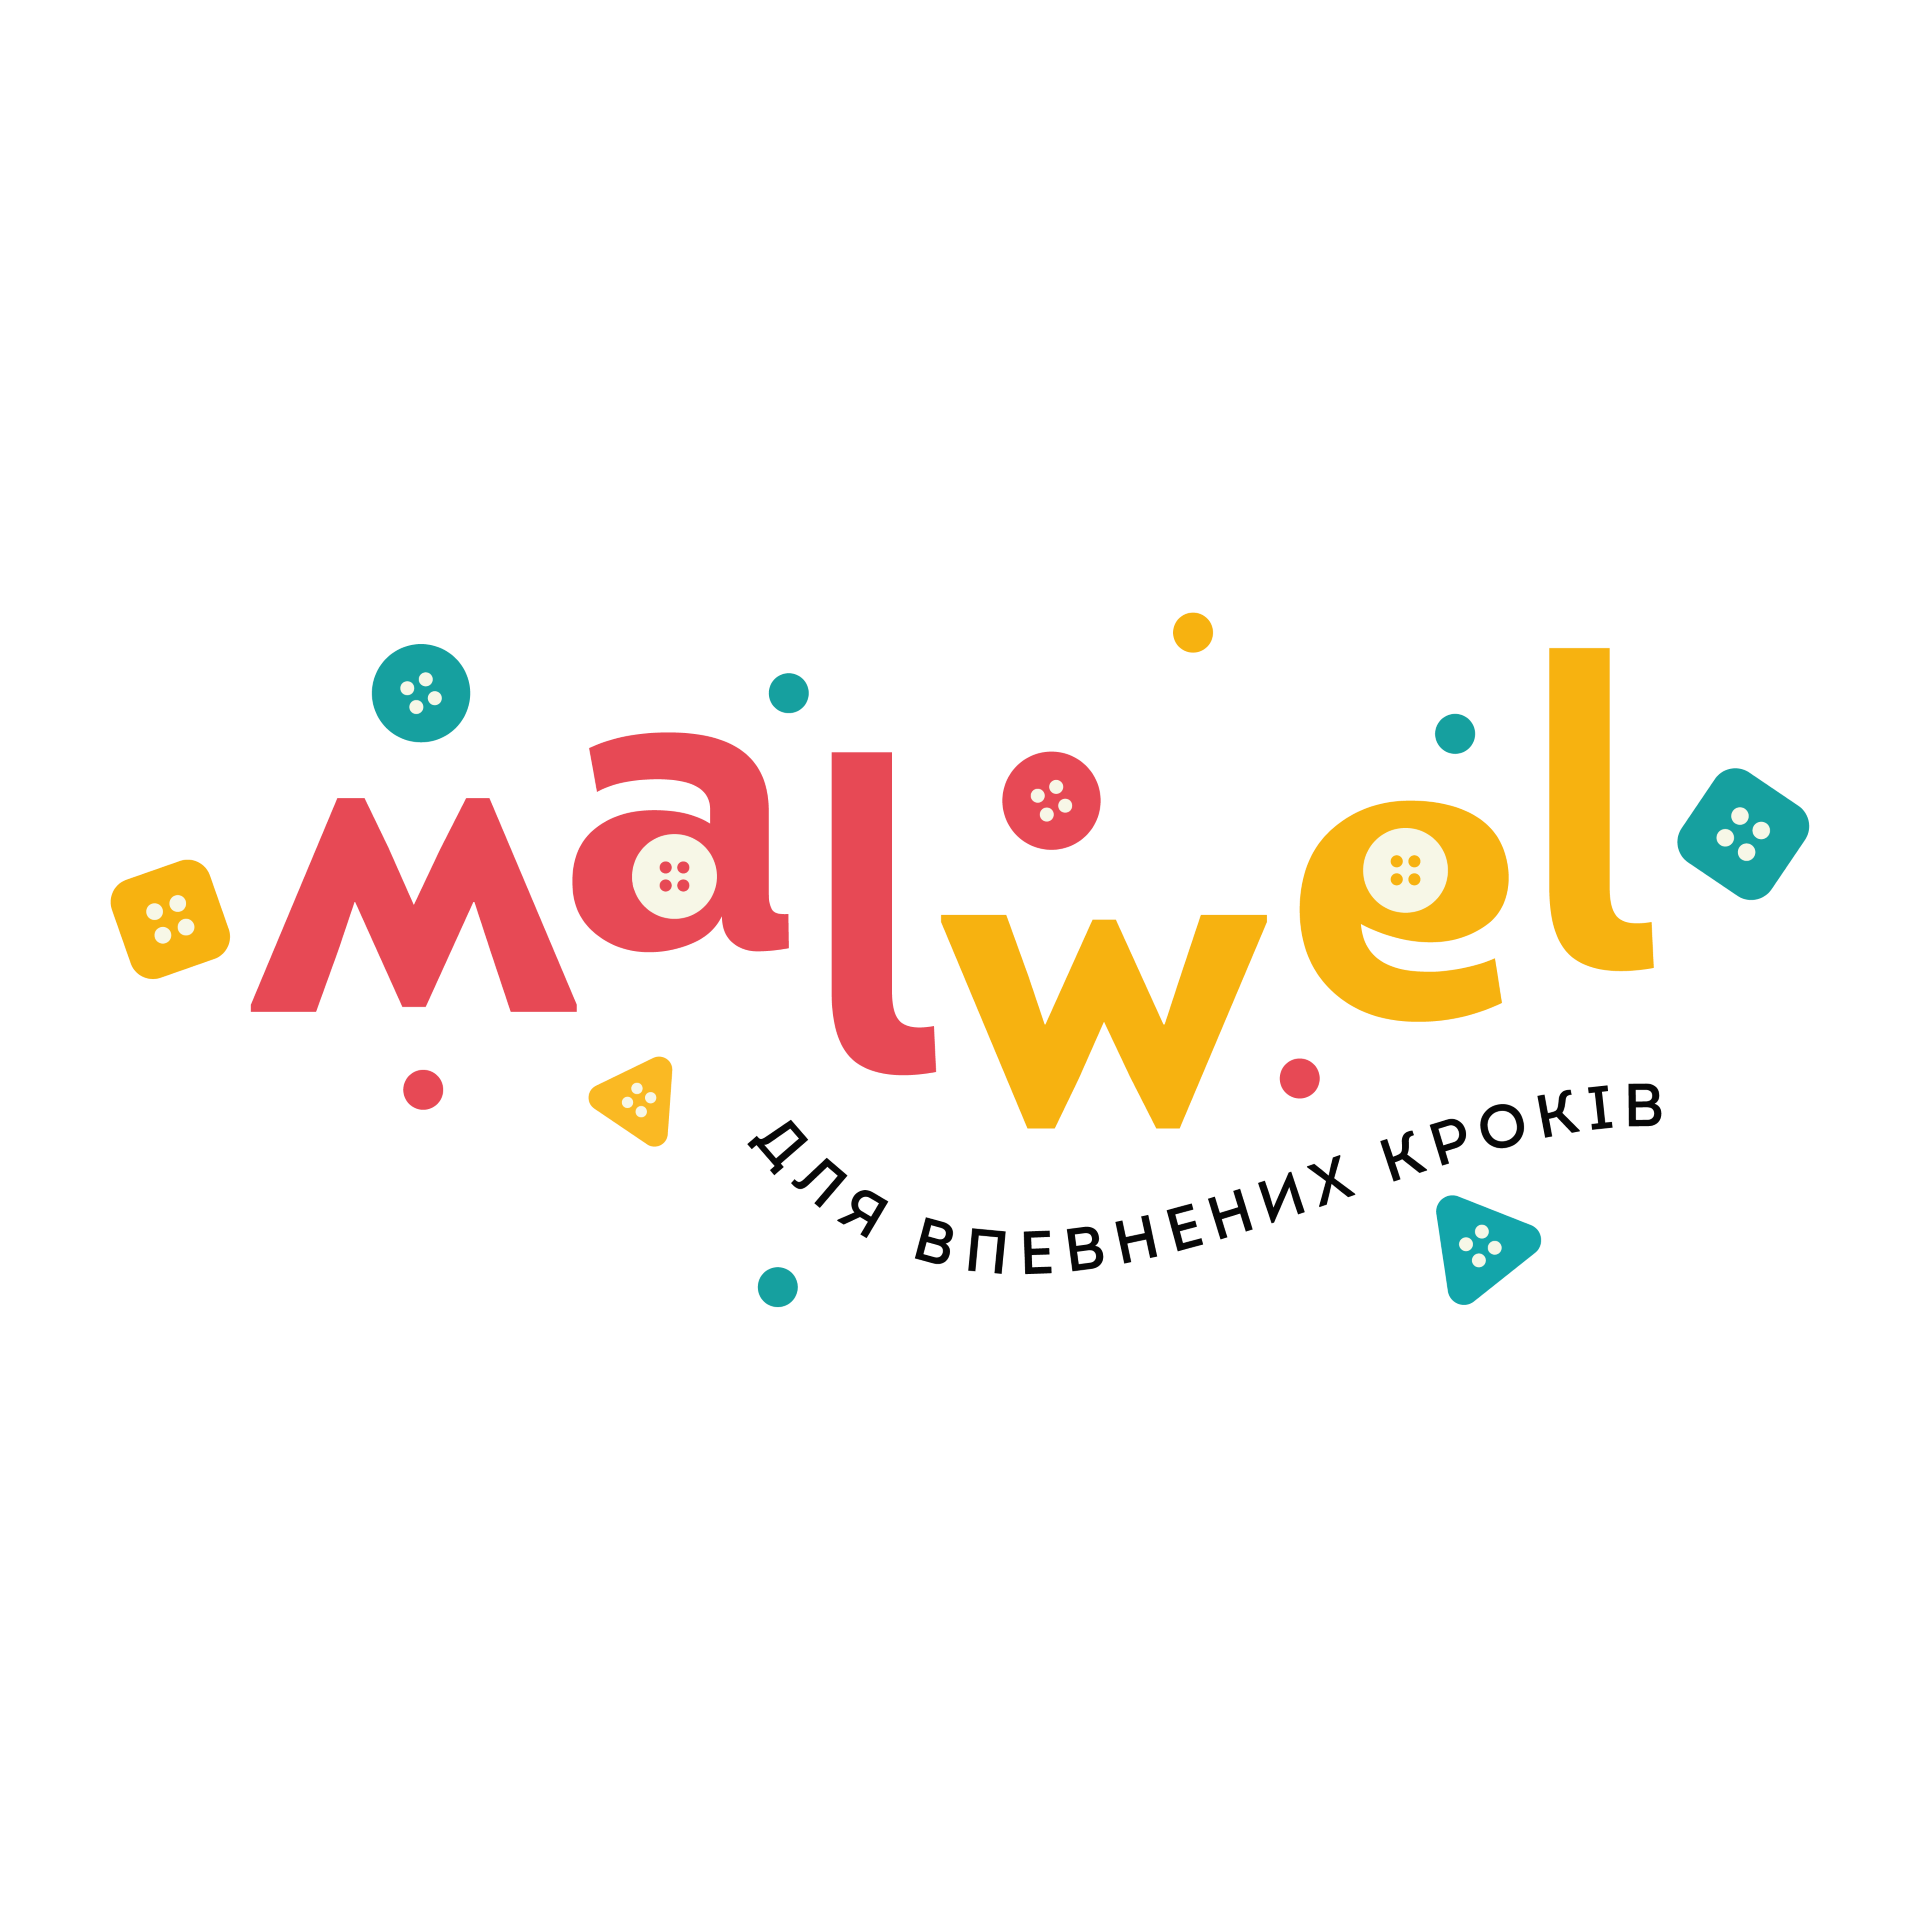 Malwel